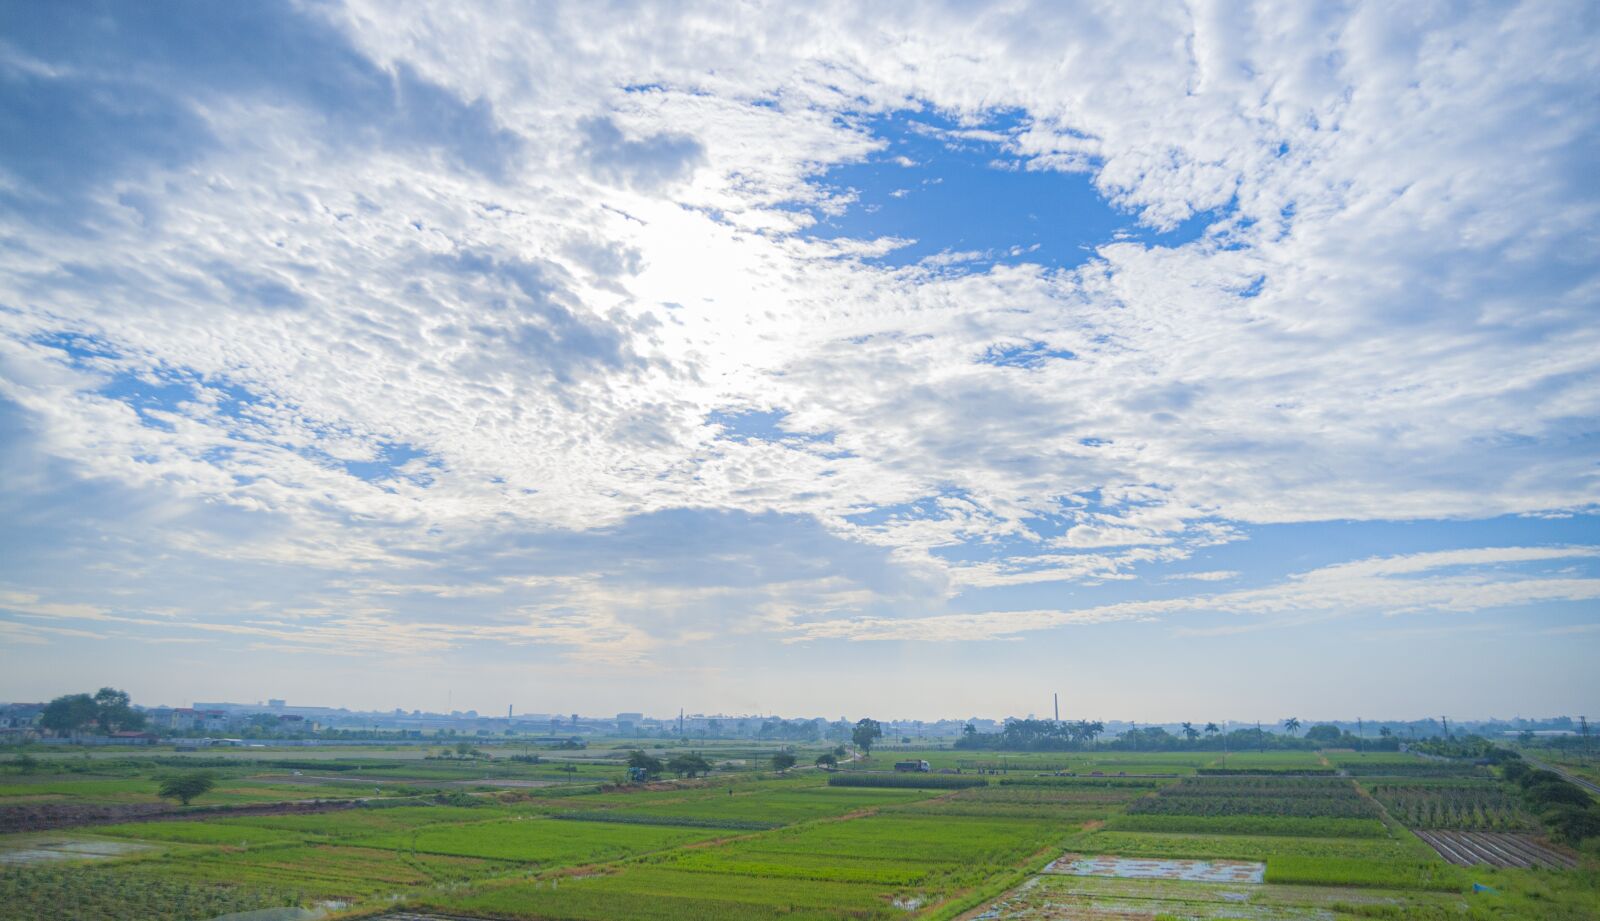 Nikon D700 sample photo. Cloud, field, landscape photography